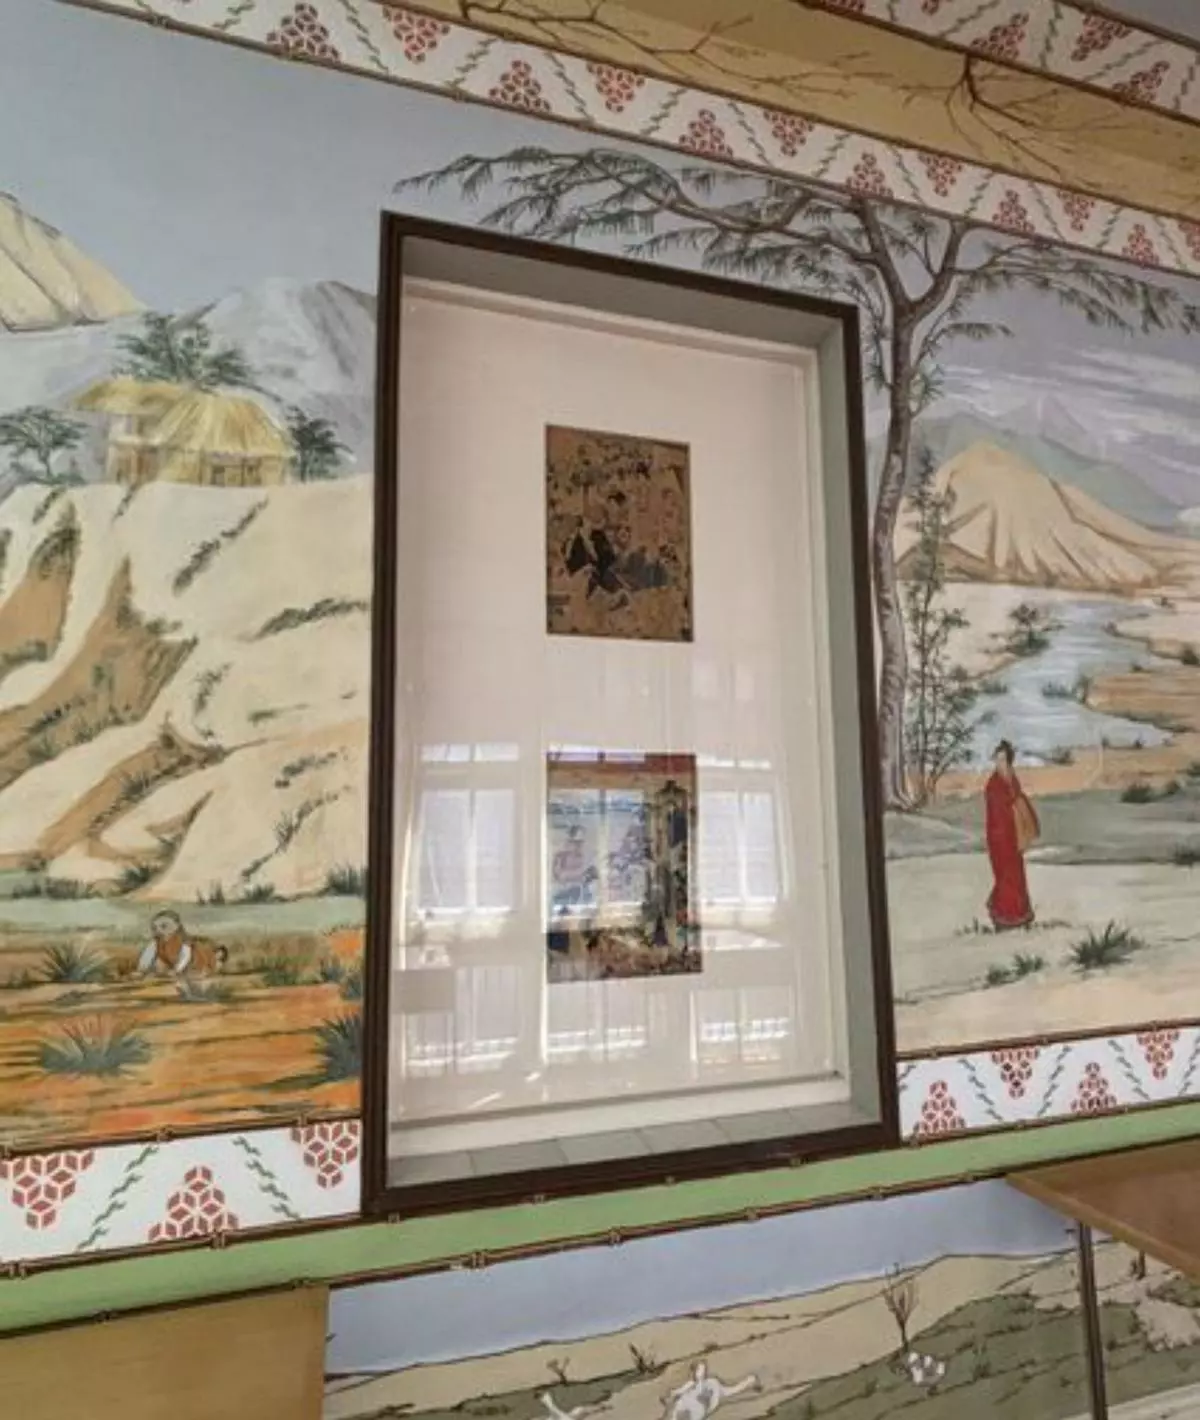 Cristal de metacrilato para proteger las pinturas japonesas de Casa Solita en Benavente